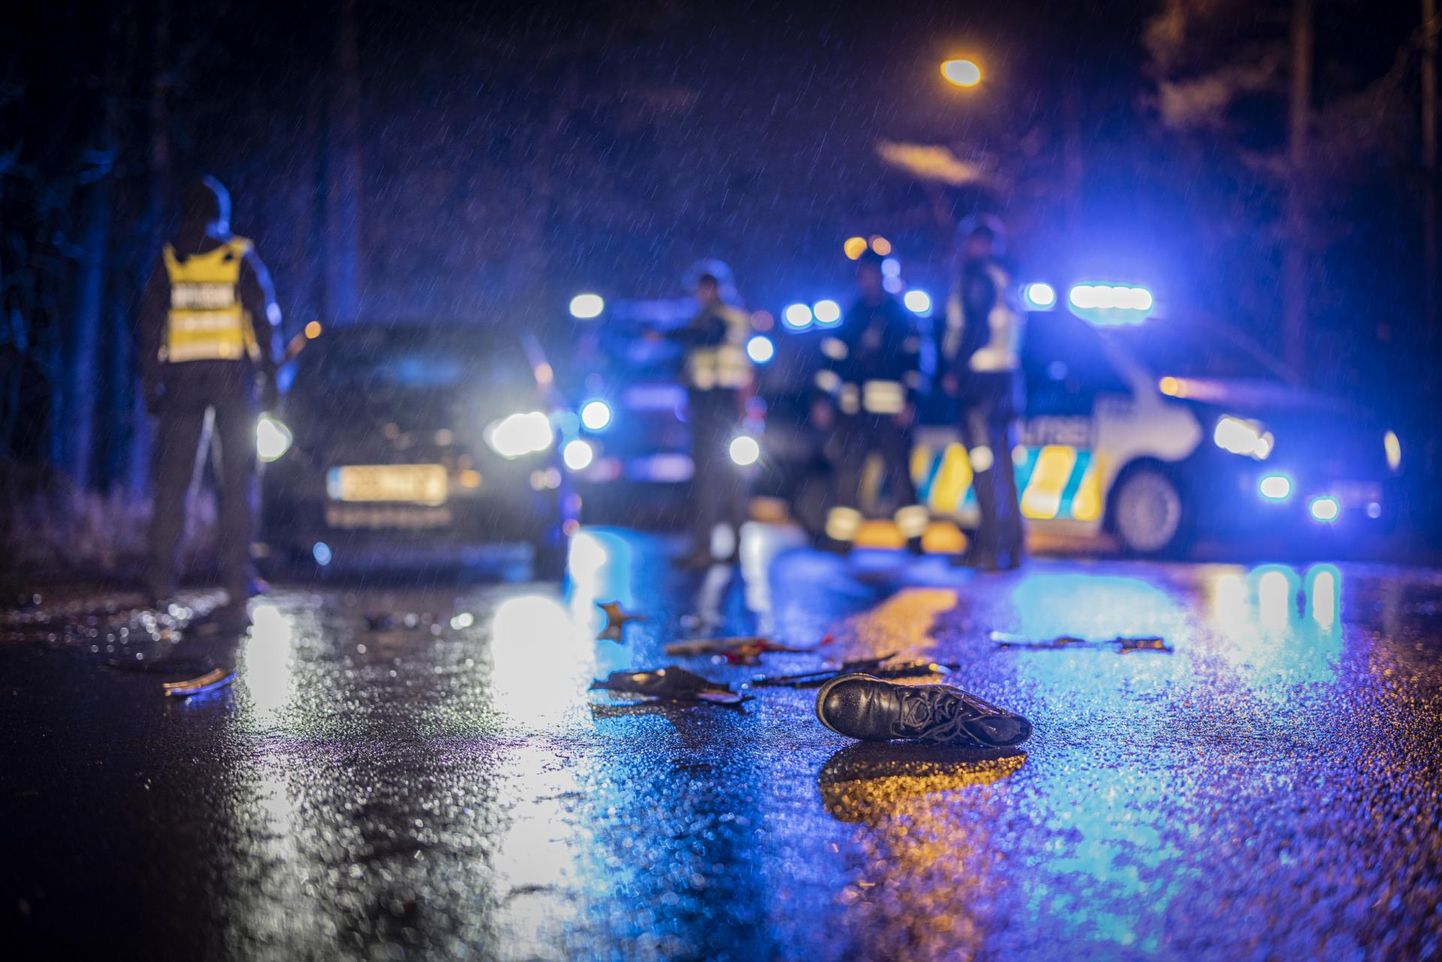 Sel aastal saatis politsei suurimatele liiklusrikkujatele üle Eesti 761 musta jõulukaarti.